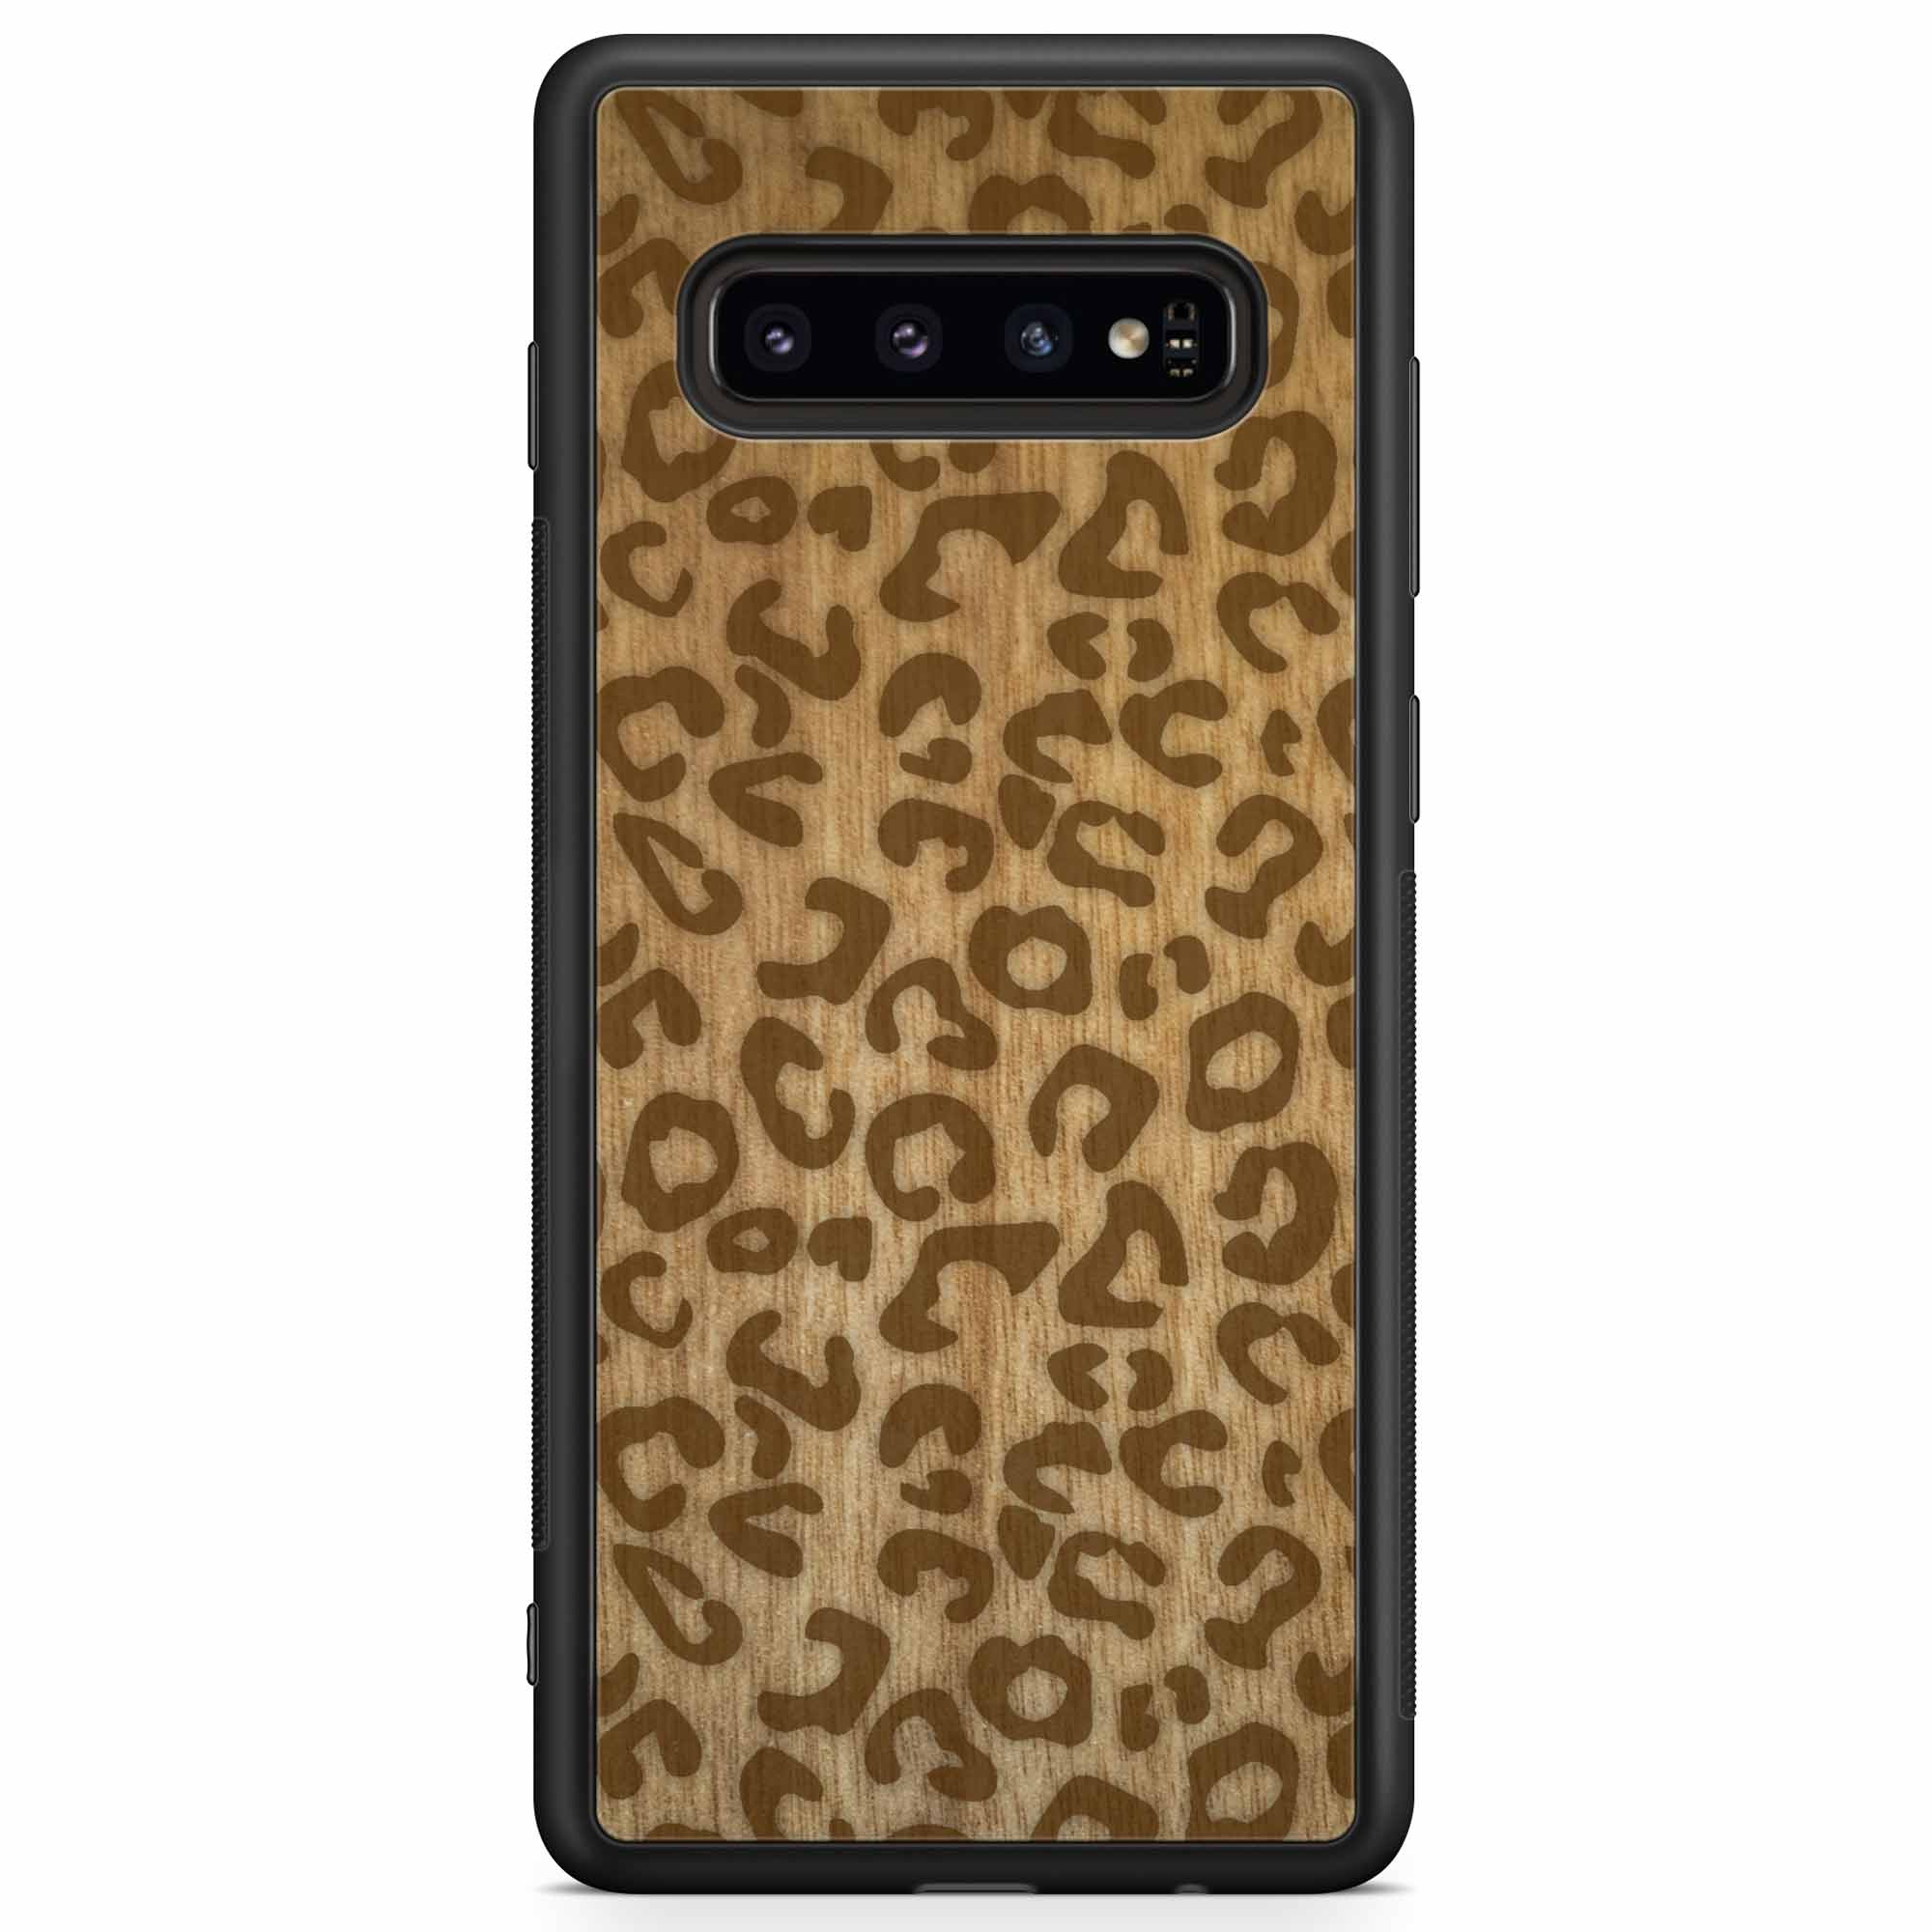 Custodia in legno per Samsung S10 con stampa ghepardo